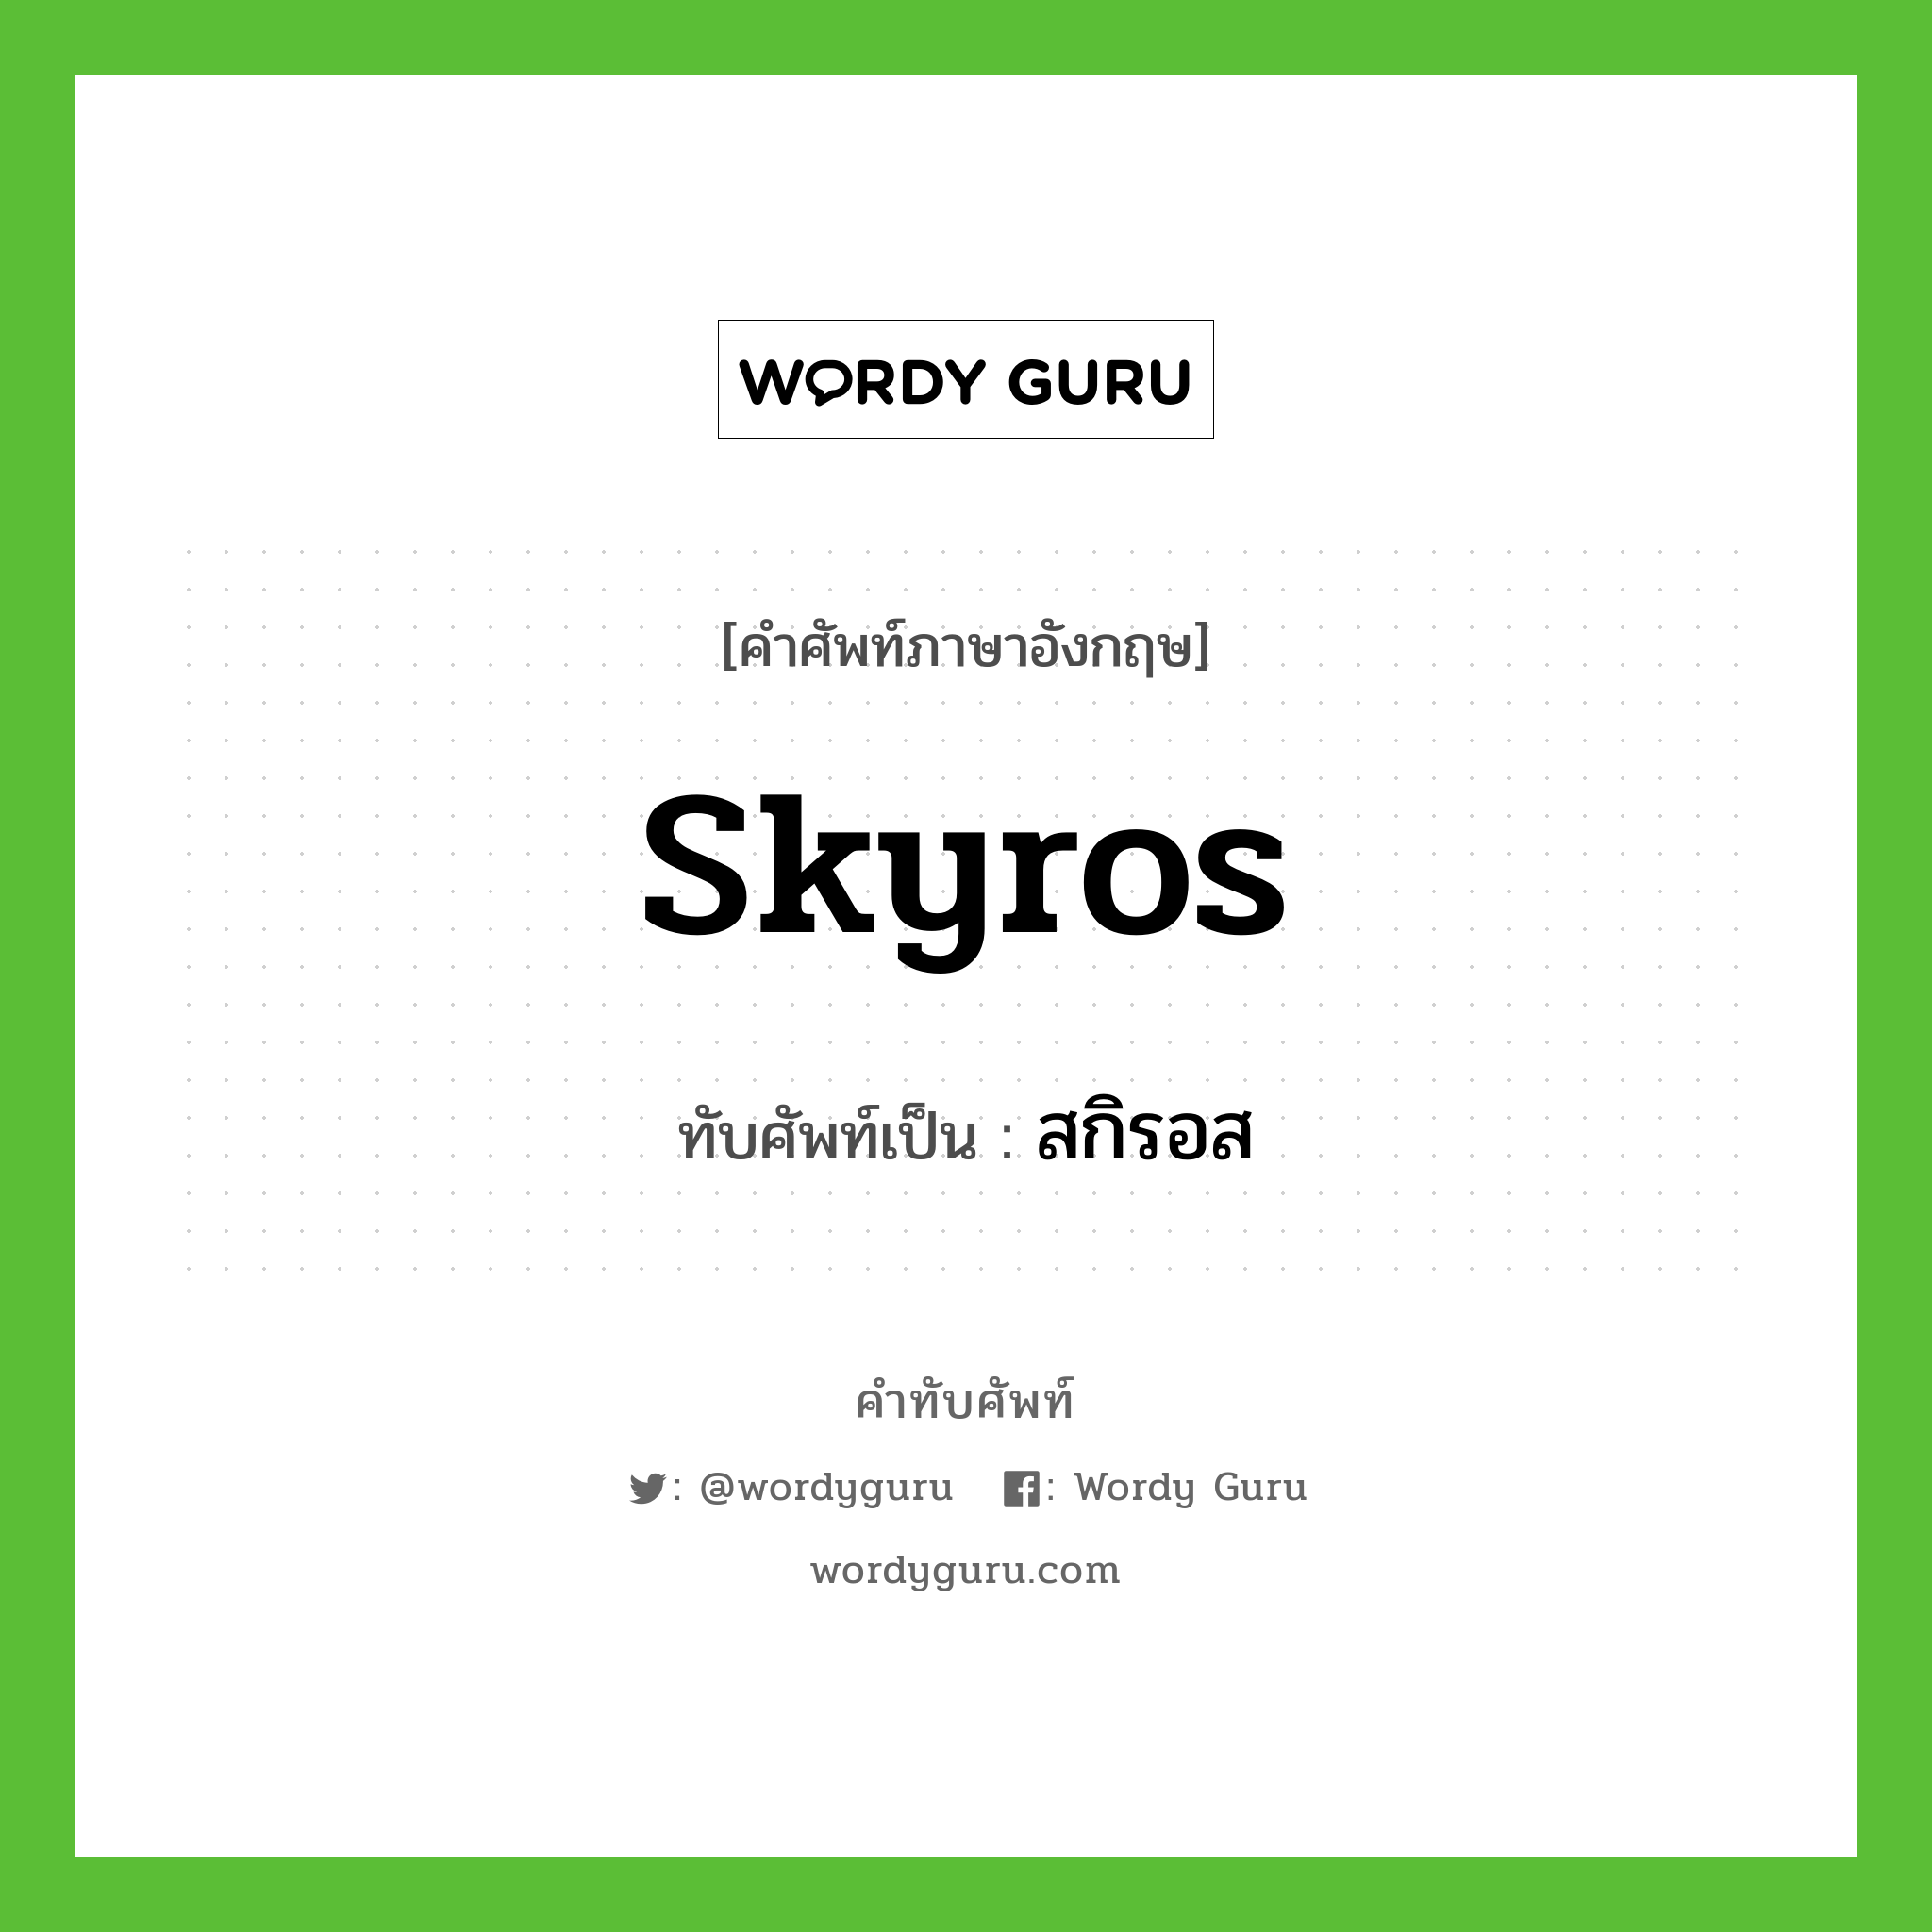 skyros เขียนเป็นคำไทยว่าอะไร?, คำศัพท์ภาษาอังกฤษ skyros ทับศัพท์เป็น สกิรอส